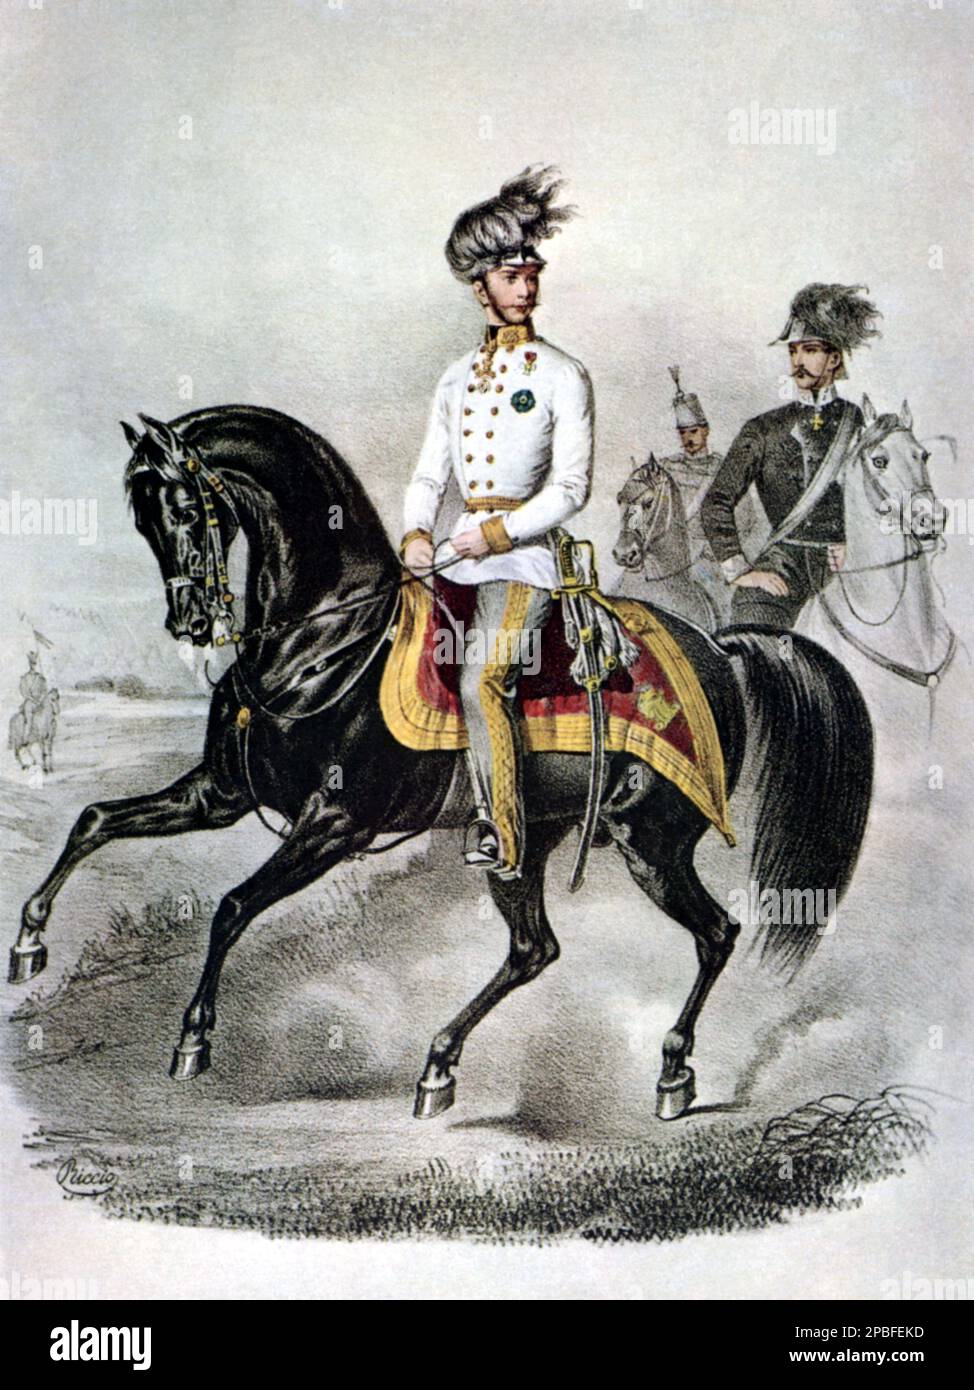 1859 Ca : der österreichische Kaiser FRANZ JOSEF von ABSBURG ( 1830 - 1916 ) , Kaiser von Österreich , König von Ungarn und Böhmen , Beliebter Aufdruck des italienischen Gravierers Riccio - FRANCESCO GIUSEPPE - JOSEPH - ABSBURG - ASBURG - ASBURGO - ADEL - NOBILI - Nobiltà - REALI - HABSBURG - HASBURG - KÖNIGSFAMILIE - ÖSTERREICH - Bart - barba - Baffi - Schnurrbart - Militäruniform - divisa uniforme militare - Francesco Giuseppe - Risorgimento - CAVALLO - PFERD - EQUITAZIONE --- Archivio GBB Stockfoto